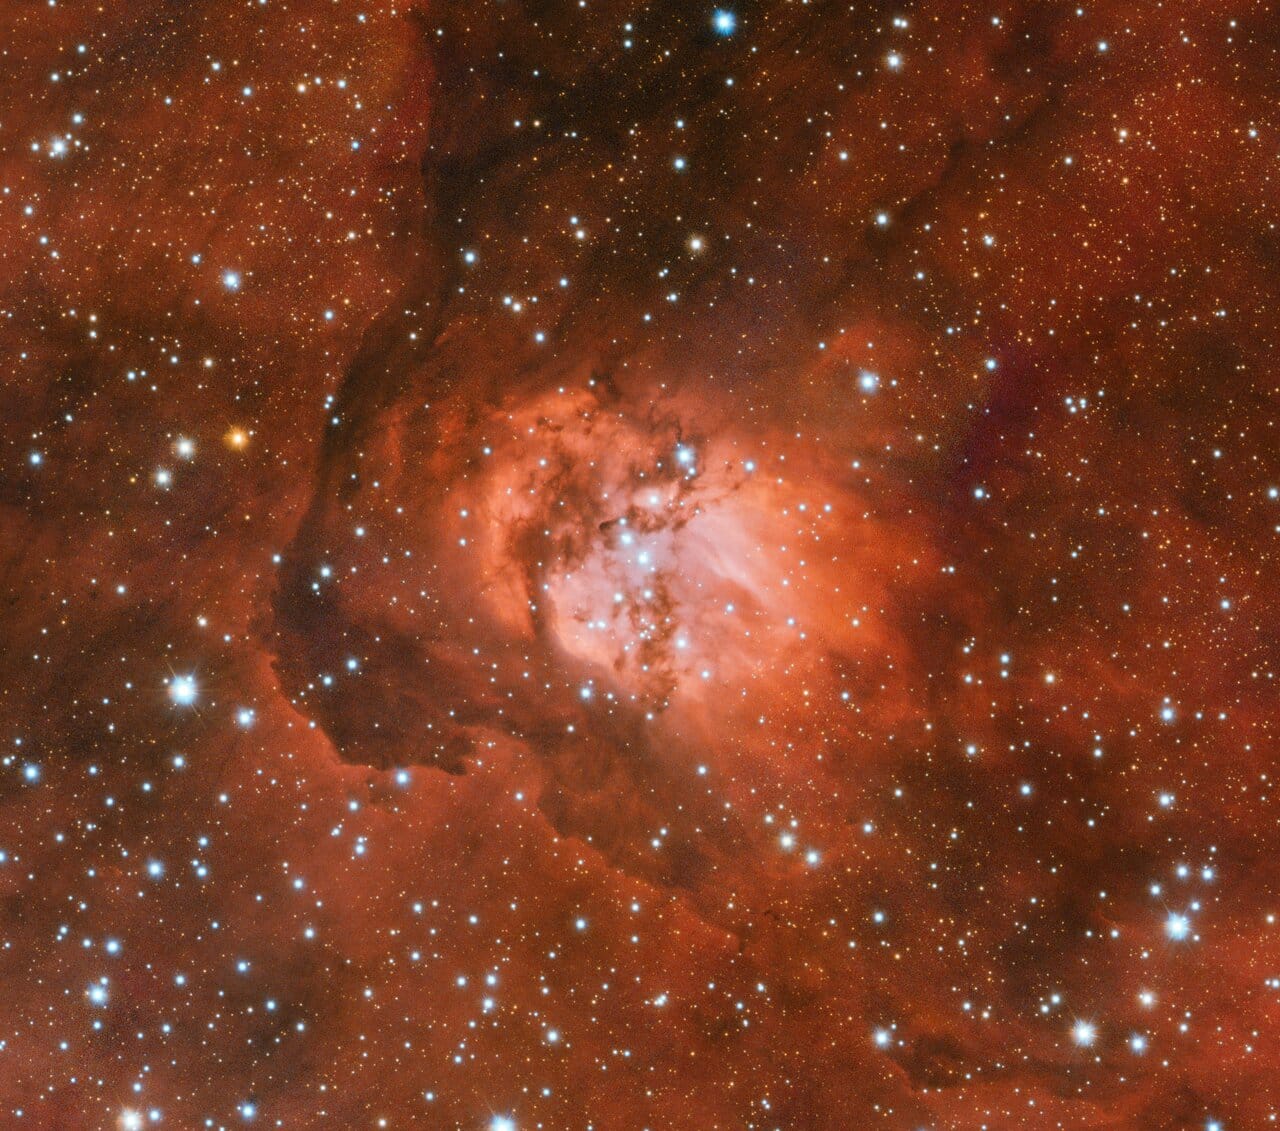 Una miríada de estrellas se revela detrás del tenue resplandor naranja de la nebulosa Sh2-54